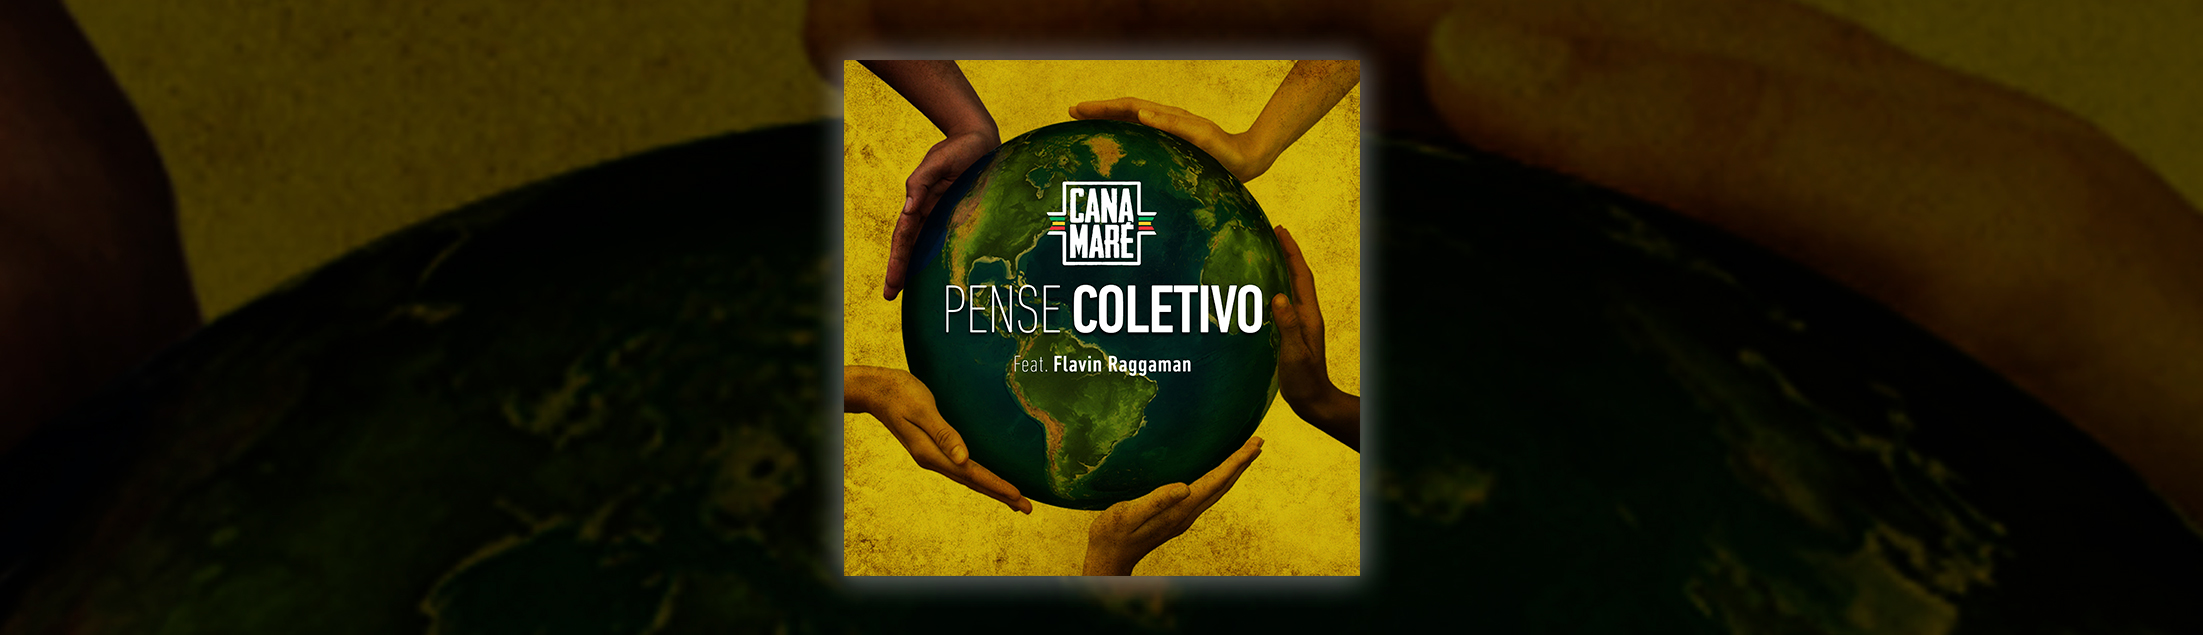 O grupo Canamaré lança o single 'Pense Coletivo'